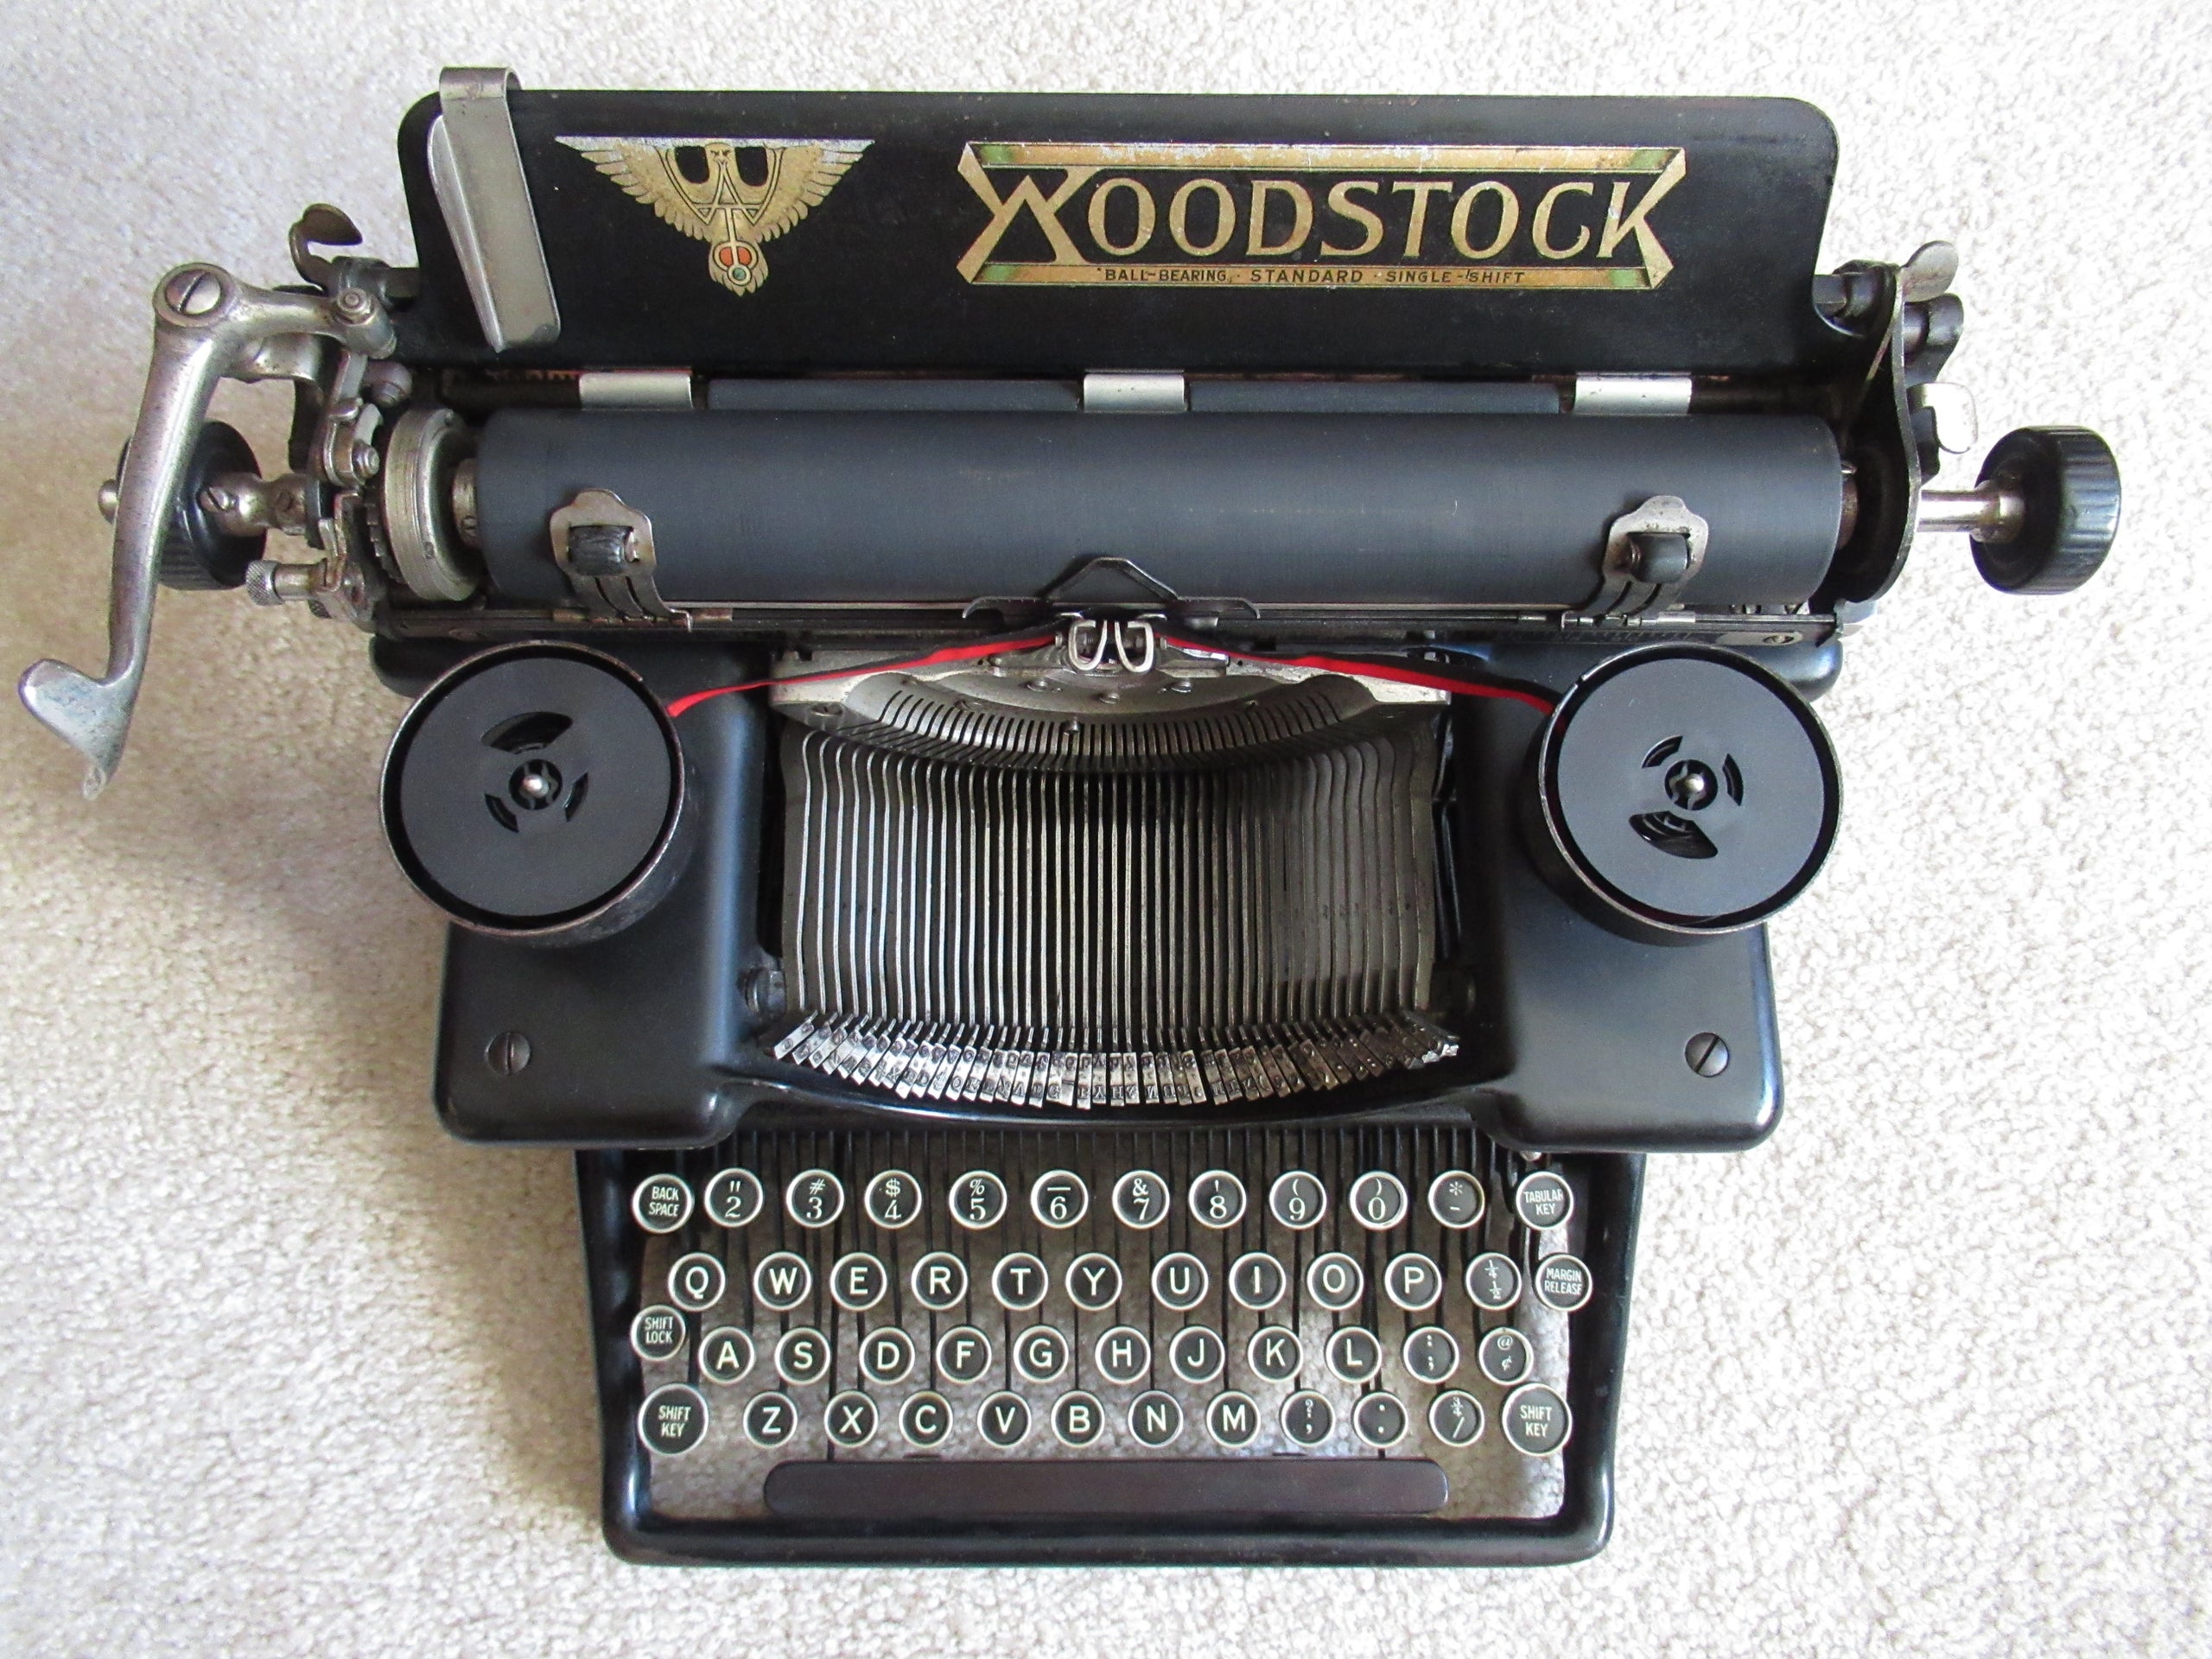 Vintage Woodstock Typewriter